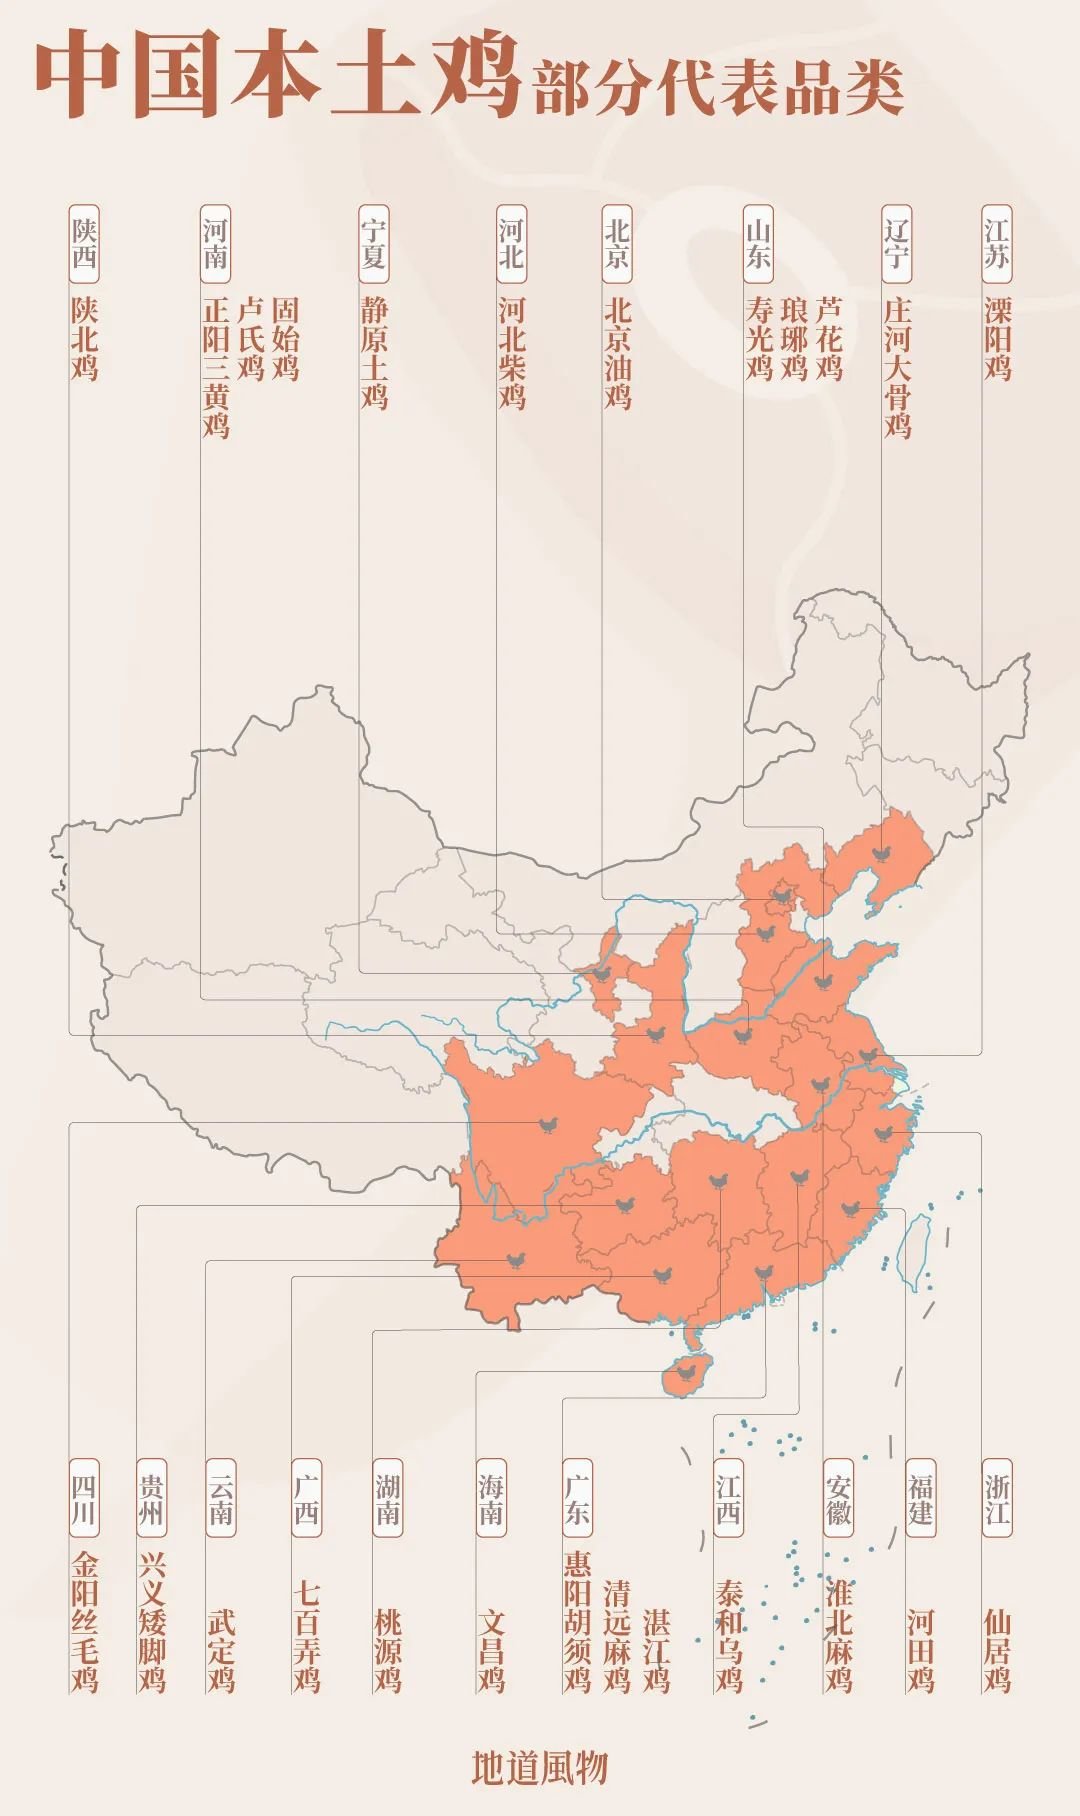 中国各地本土鸡部分代表品种，